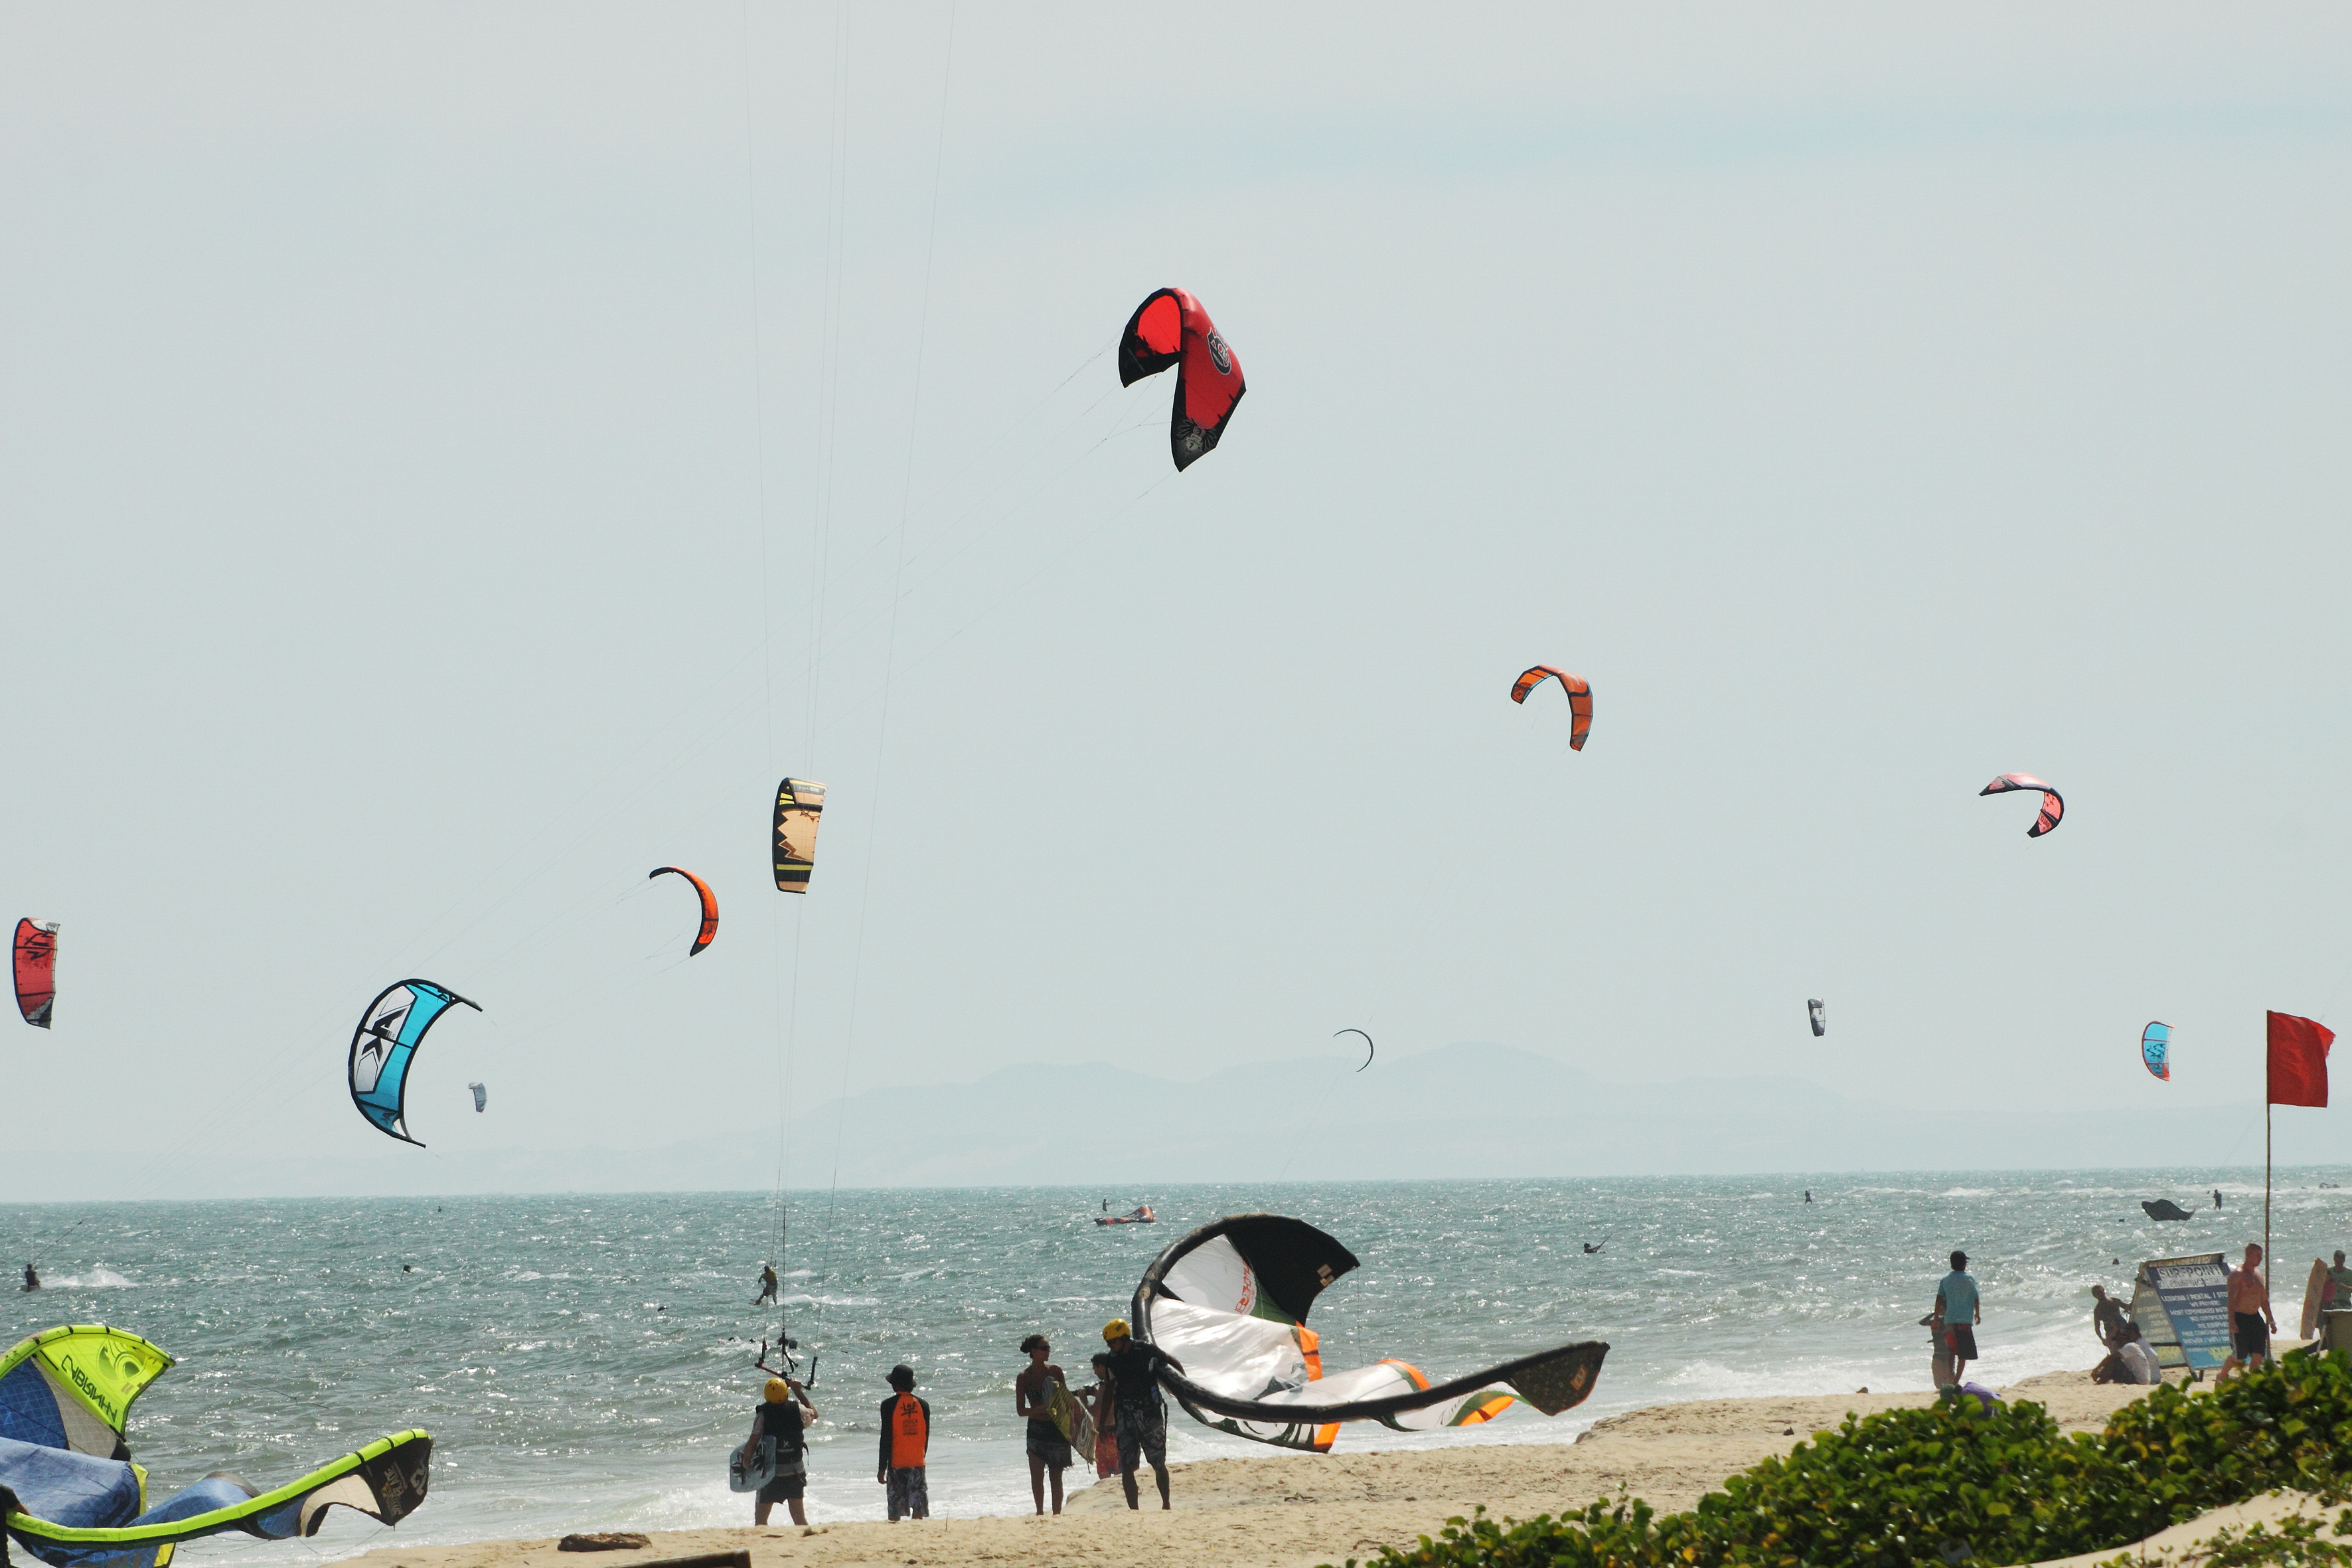 Kite surfing - Khách sạn Sài Gòn Mũi Né